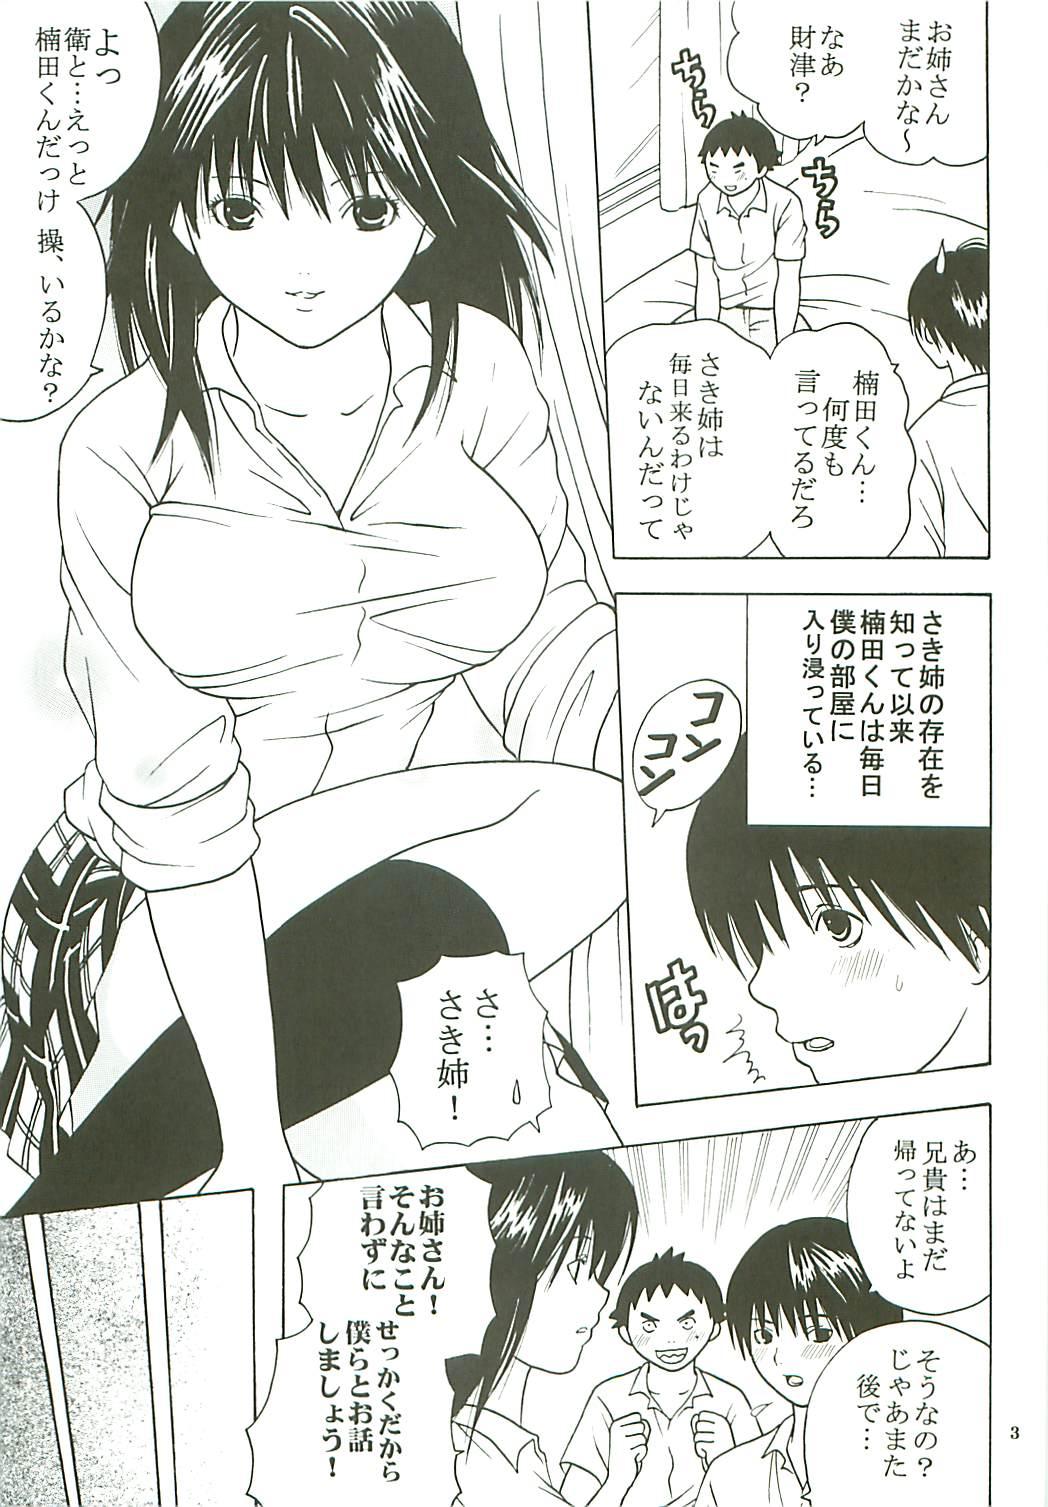 Teen Blowjob Chitsui Gentei Nakadashi Limited vol.3 - Hatsukoi limited Brazilian - Page 4